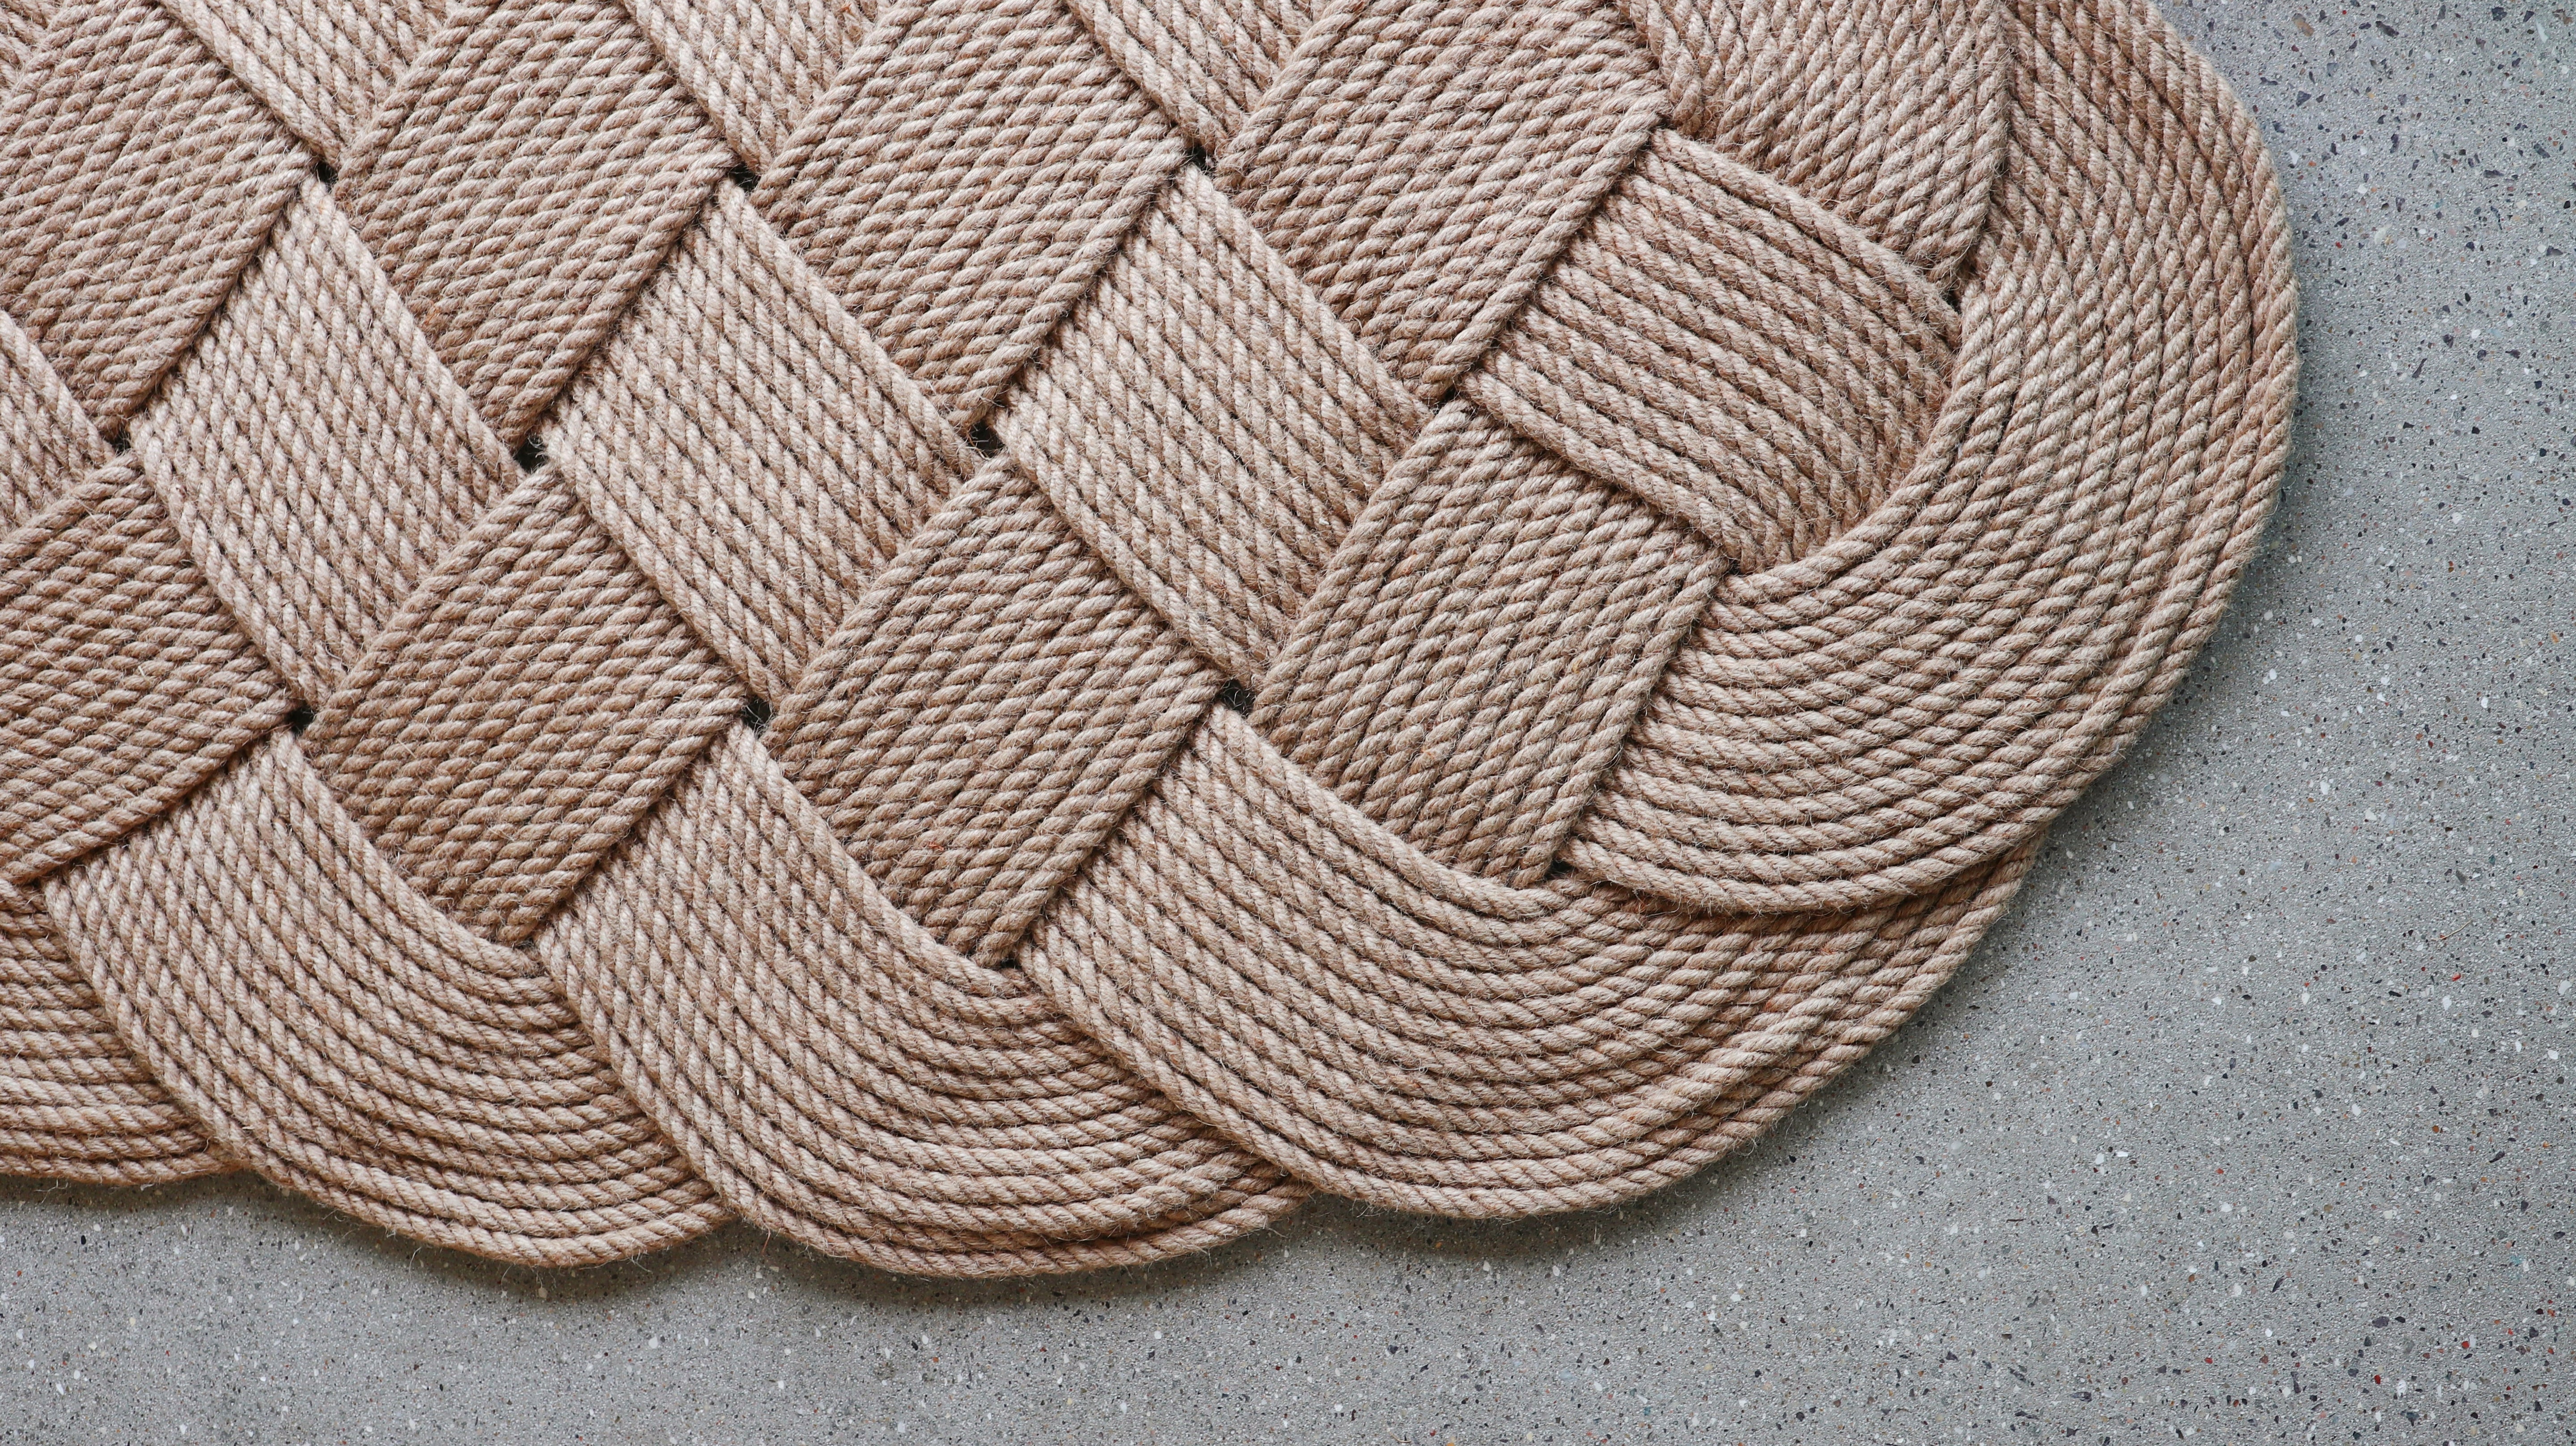 Large hand-woven door mat in jute